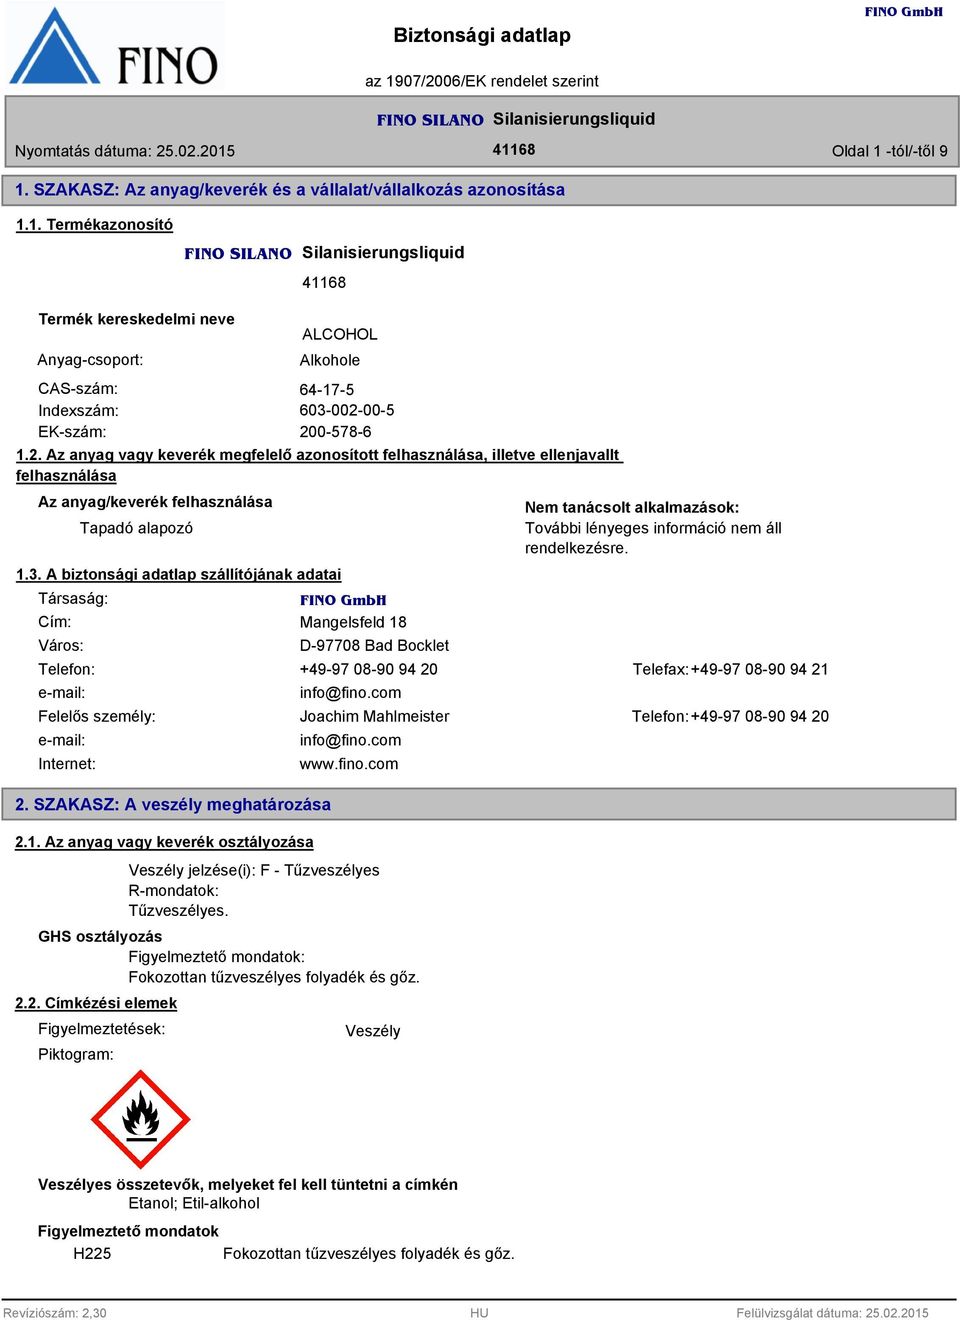 . A biztonsági adatlap szállítójának adatai Társaság: Cím: Város: Mangelsfeld 18 D-97708 Bad Bocklet Nem tanácsolt alkalmazások: További lényeges információ nem áll rendelkezésre.